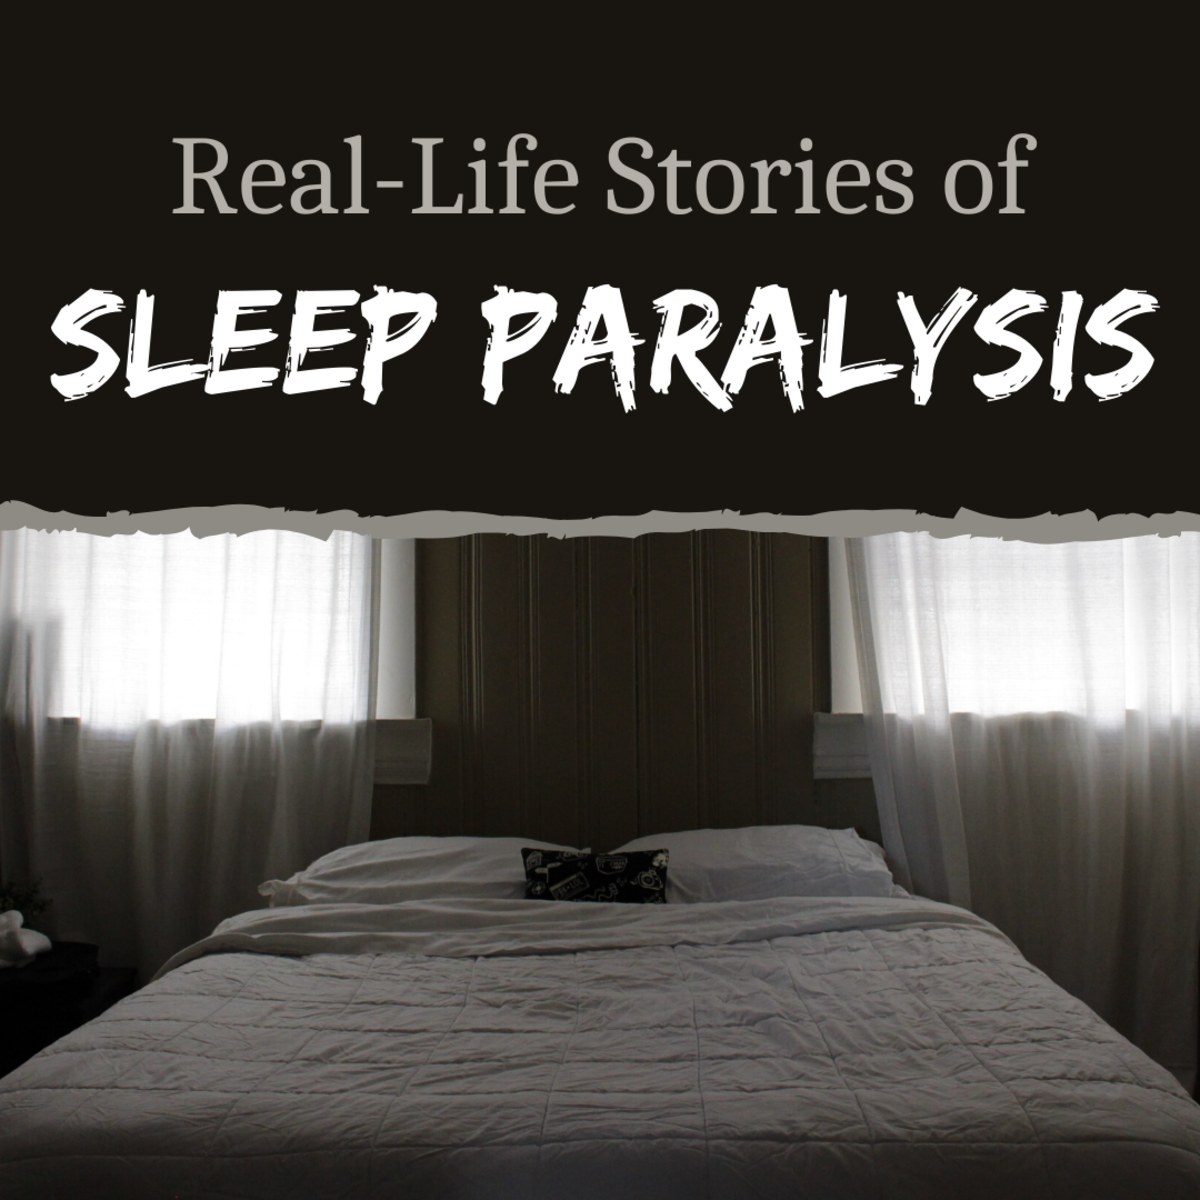 请阅读我对自己可能患有睡眠瘫痪的经历的描述，以及我表弟的故事。